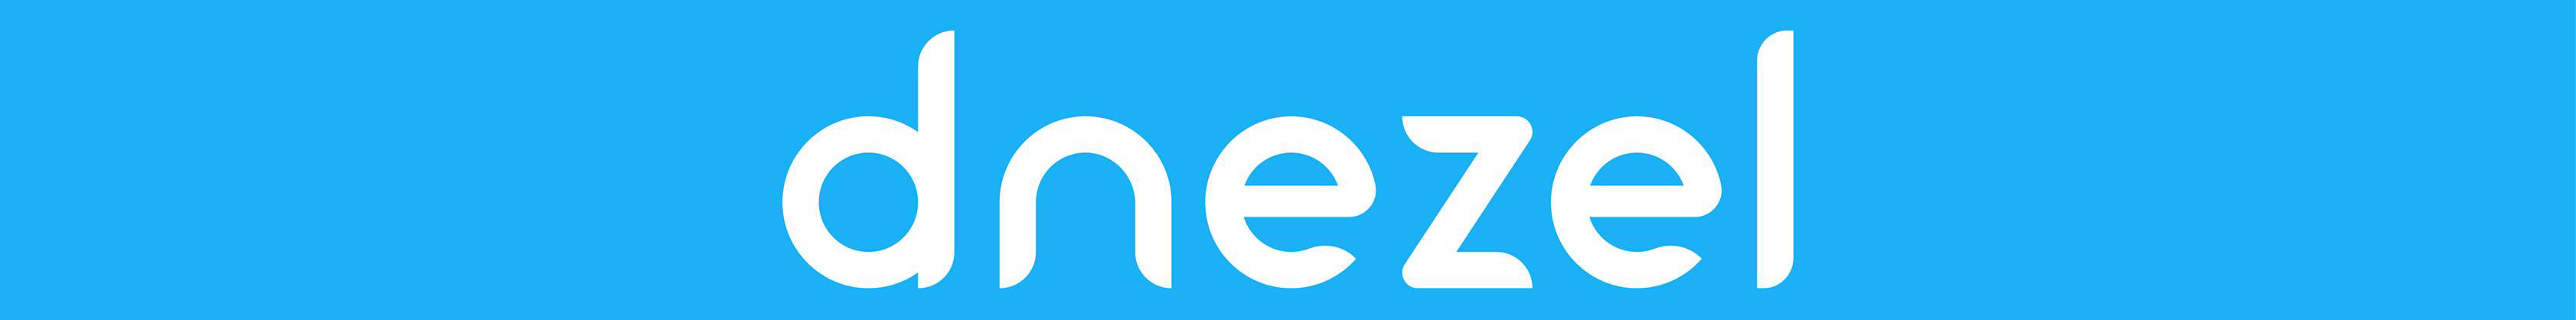 Team Dnezel's profile banner